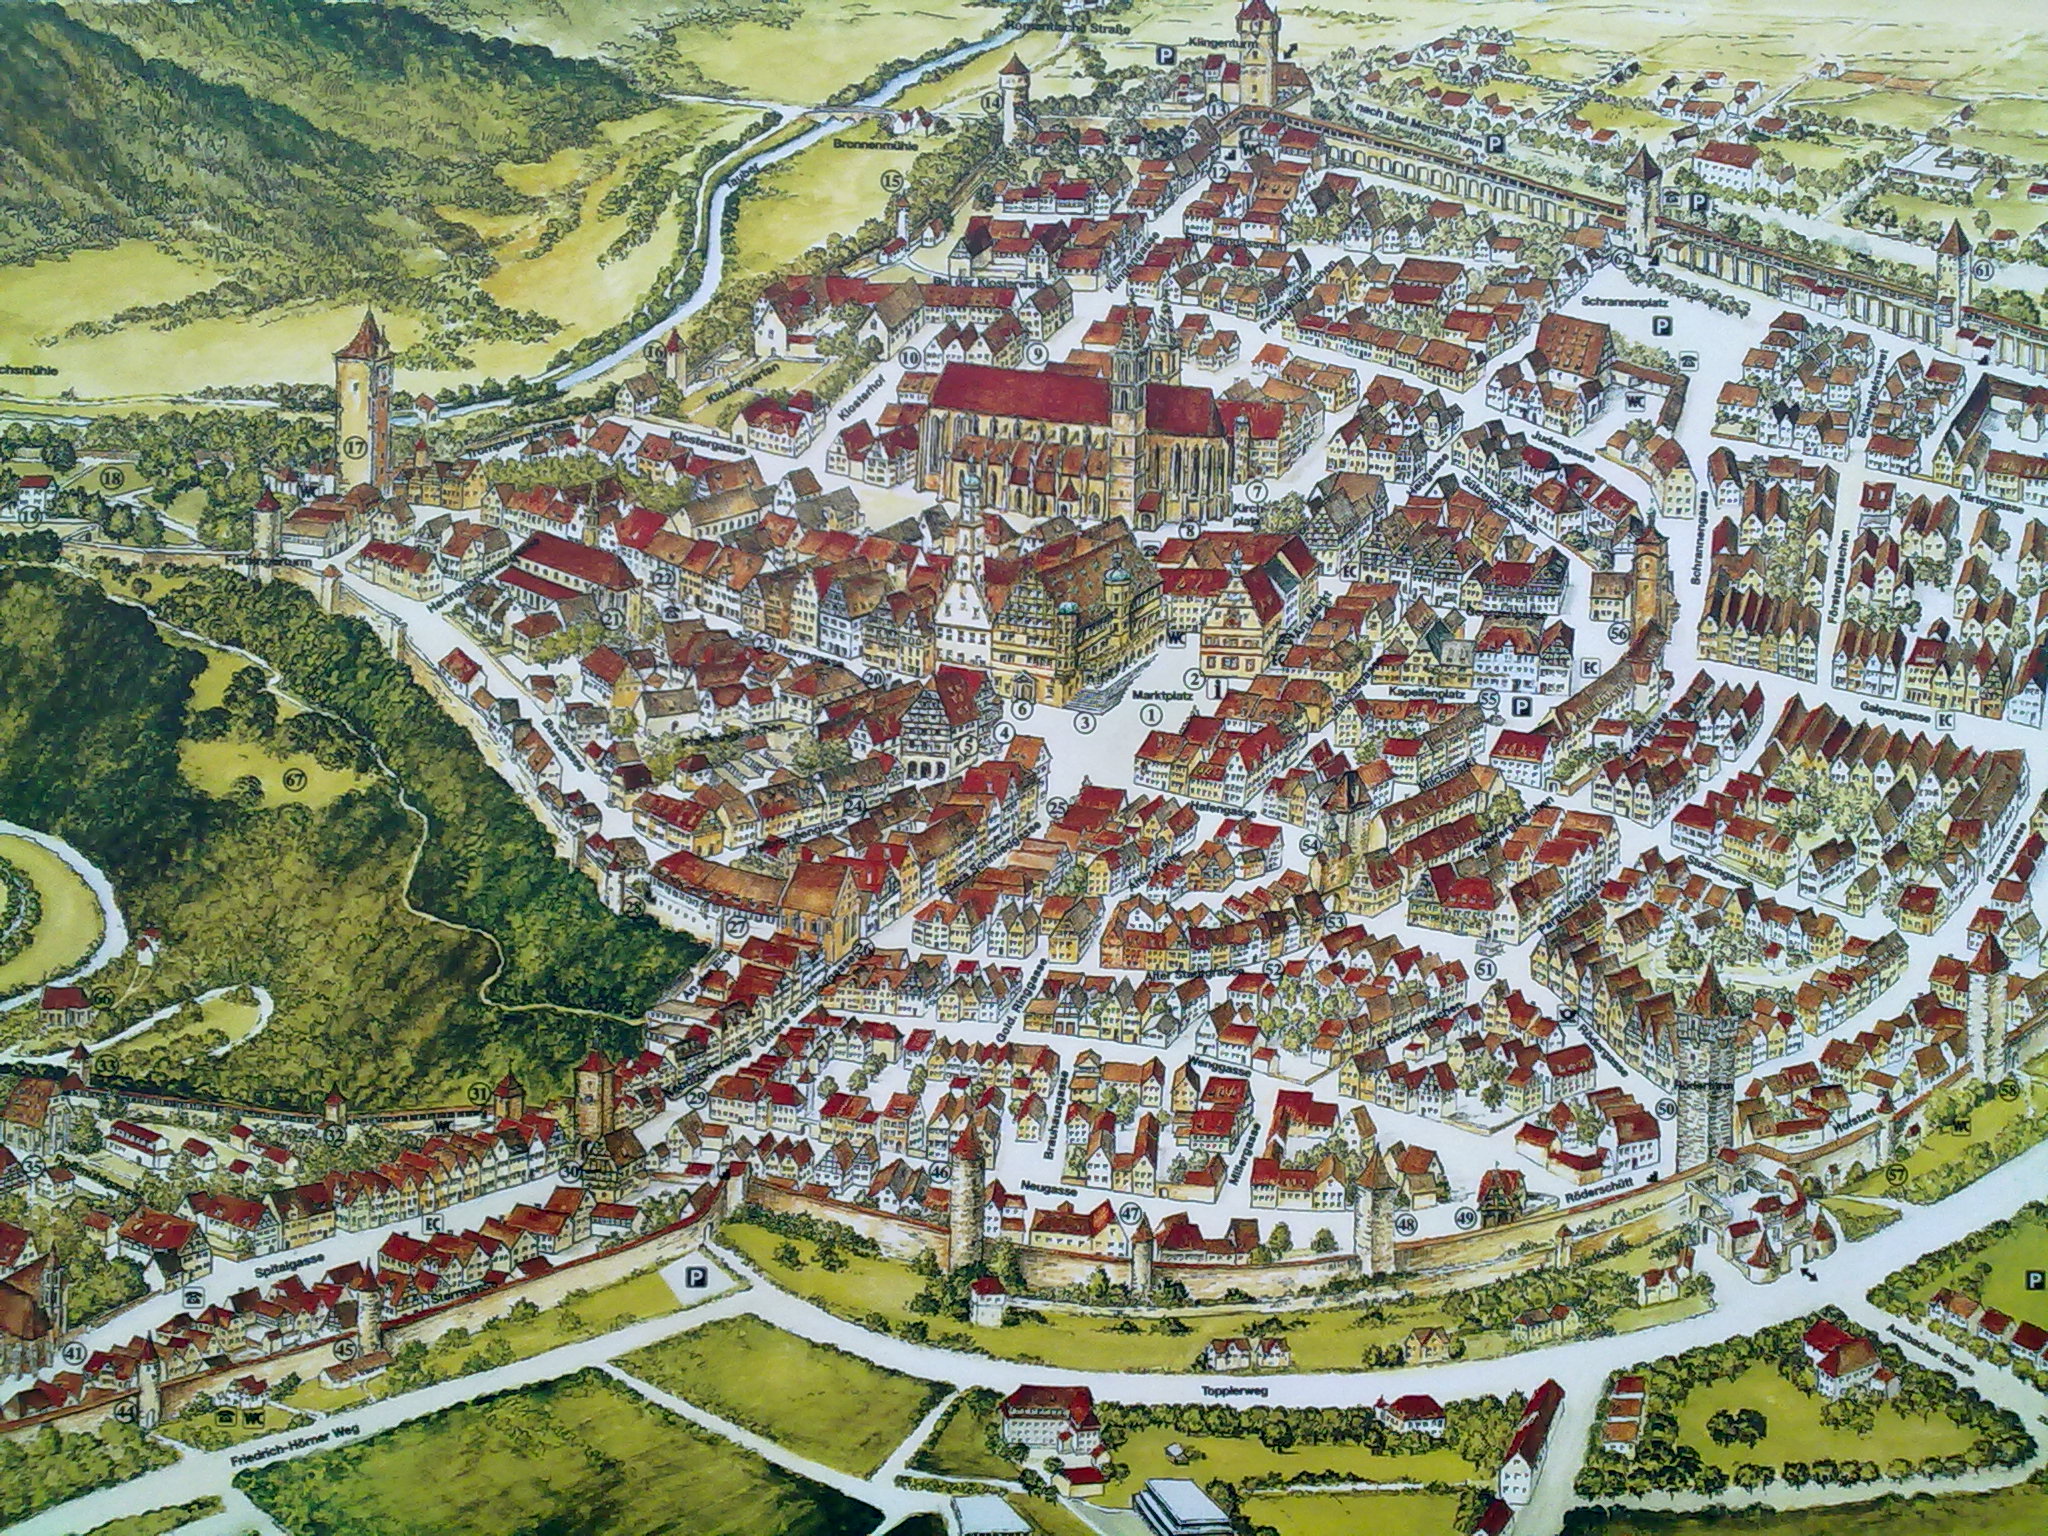 Karte der Altstadt von
Rothenburg o.d.Tauber